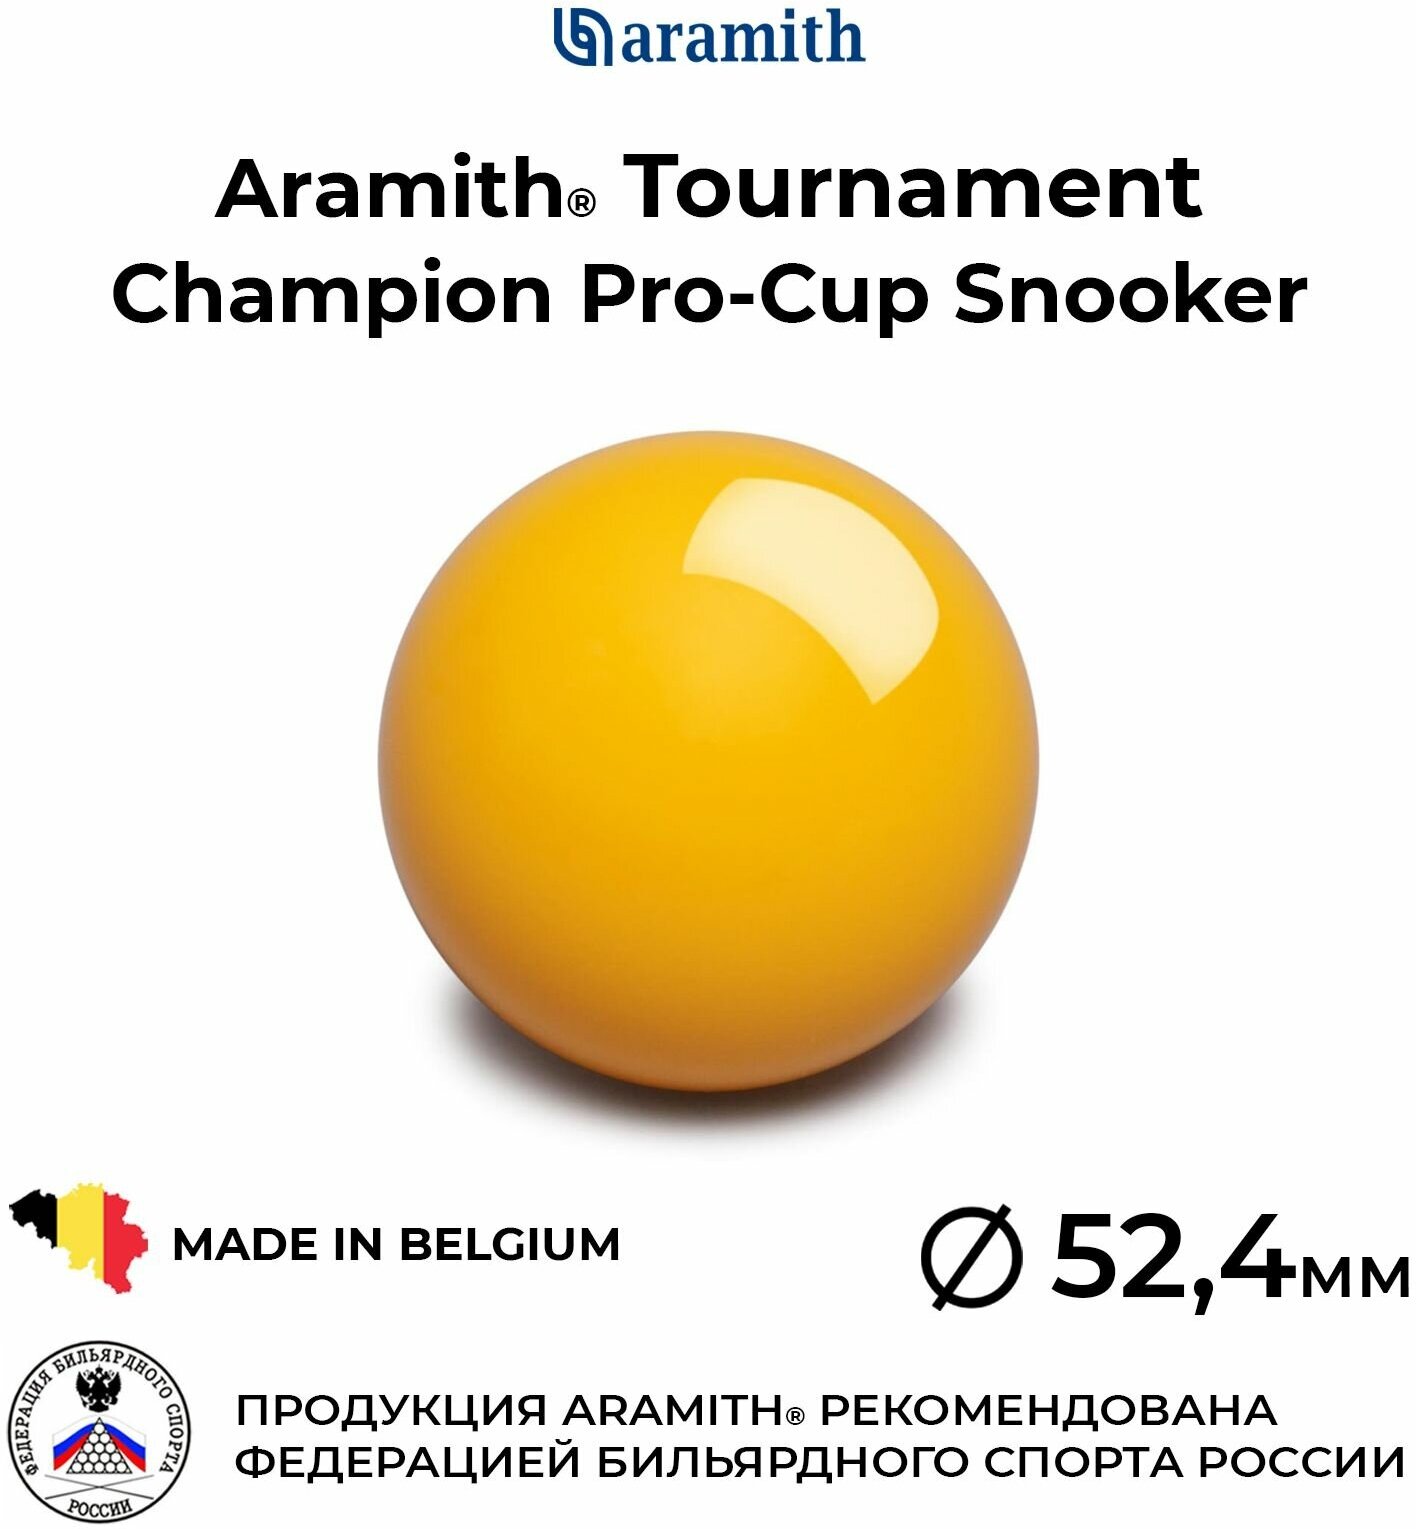 Бильярдный шар-биток 52,4 мм Арамит Турнамент Чемпион Про-Кап Снукер / Aramith Tournament Champion Pro-Cup Snooker 52,4 мм желтый 1 шт.